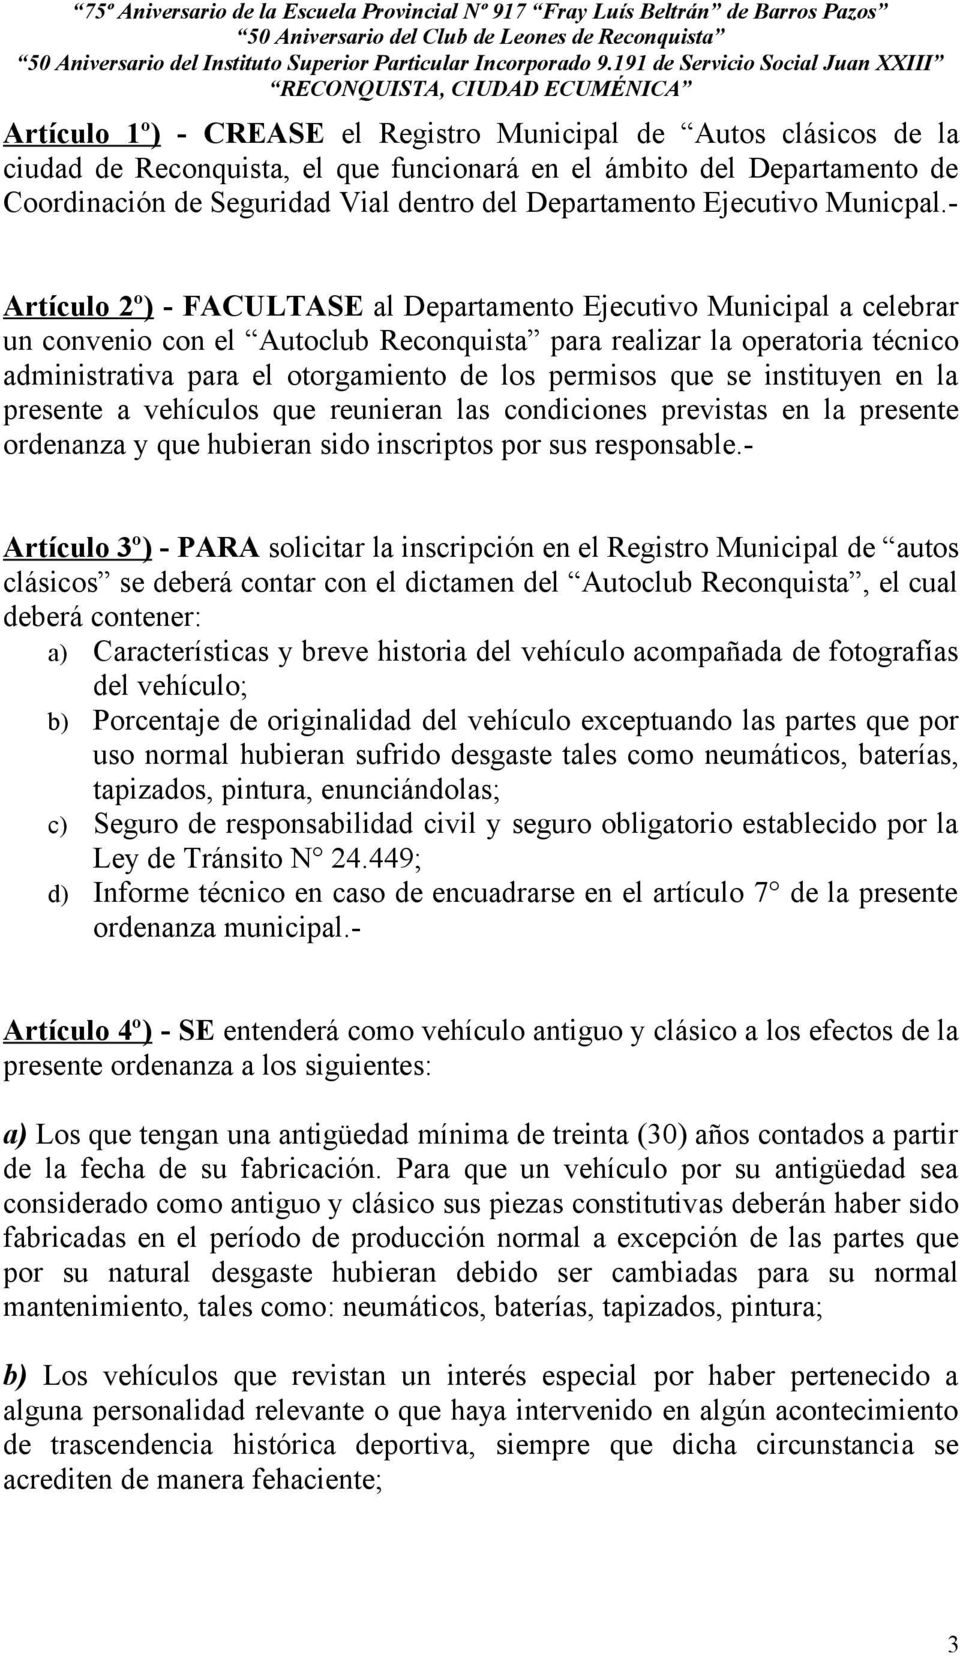 - Artículo 2º) - FACULTASE al Departamento Ejecutivo Municipal a celebrar un convenio con el Autoclub Reconquista para realizar la operatoria técnico administrativa para el otorgamiento de los